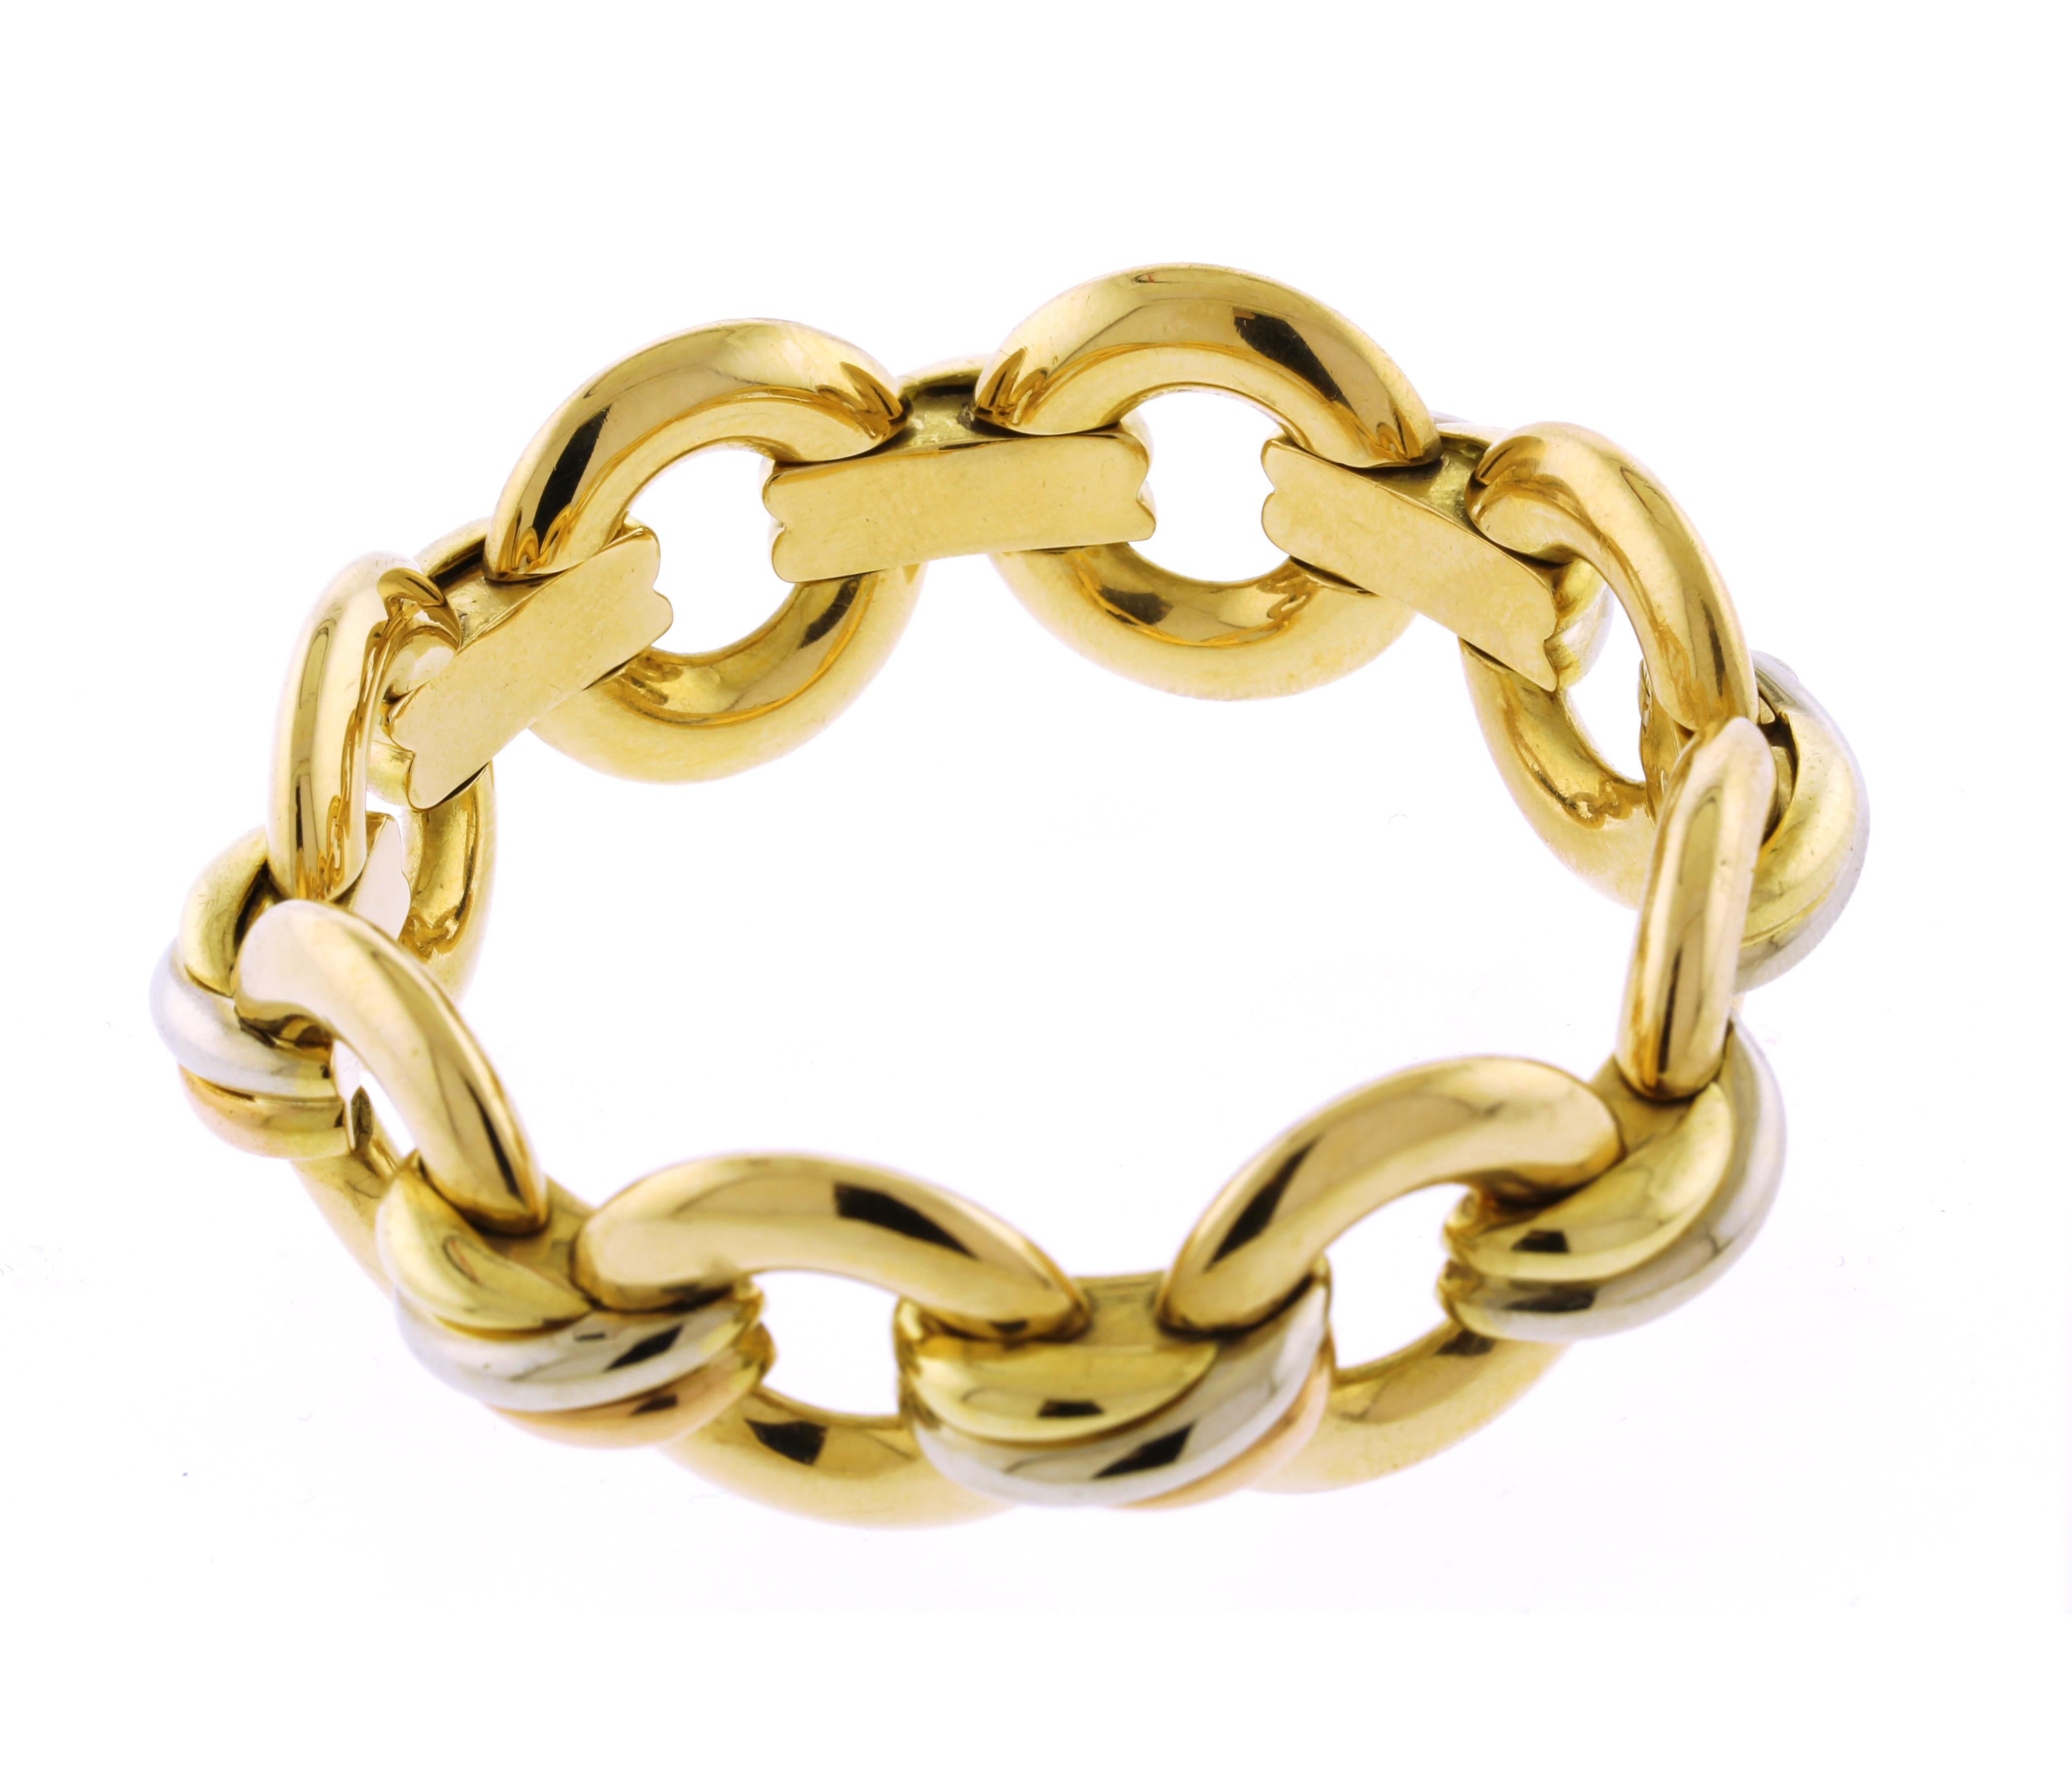 La collezione Trinity è stata introdotta per la prima volta nel 1924 e si distingue per le sue tre fasce intrecciate, ognuna realizzata con un diverso colore dell'oro: l'oro giallo che rappresenta la fedeltà, l'oro rosa che rappresenta l'amore e